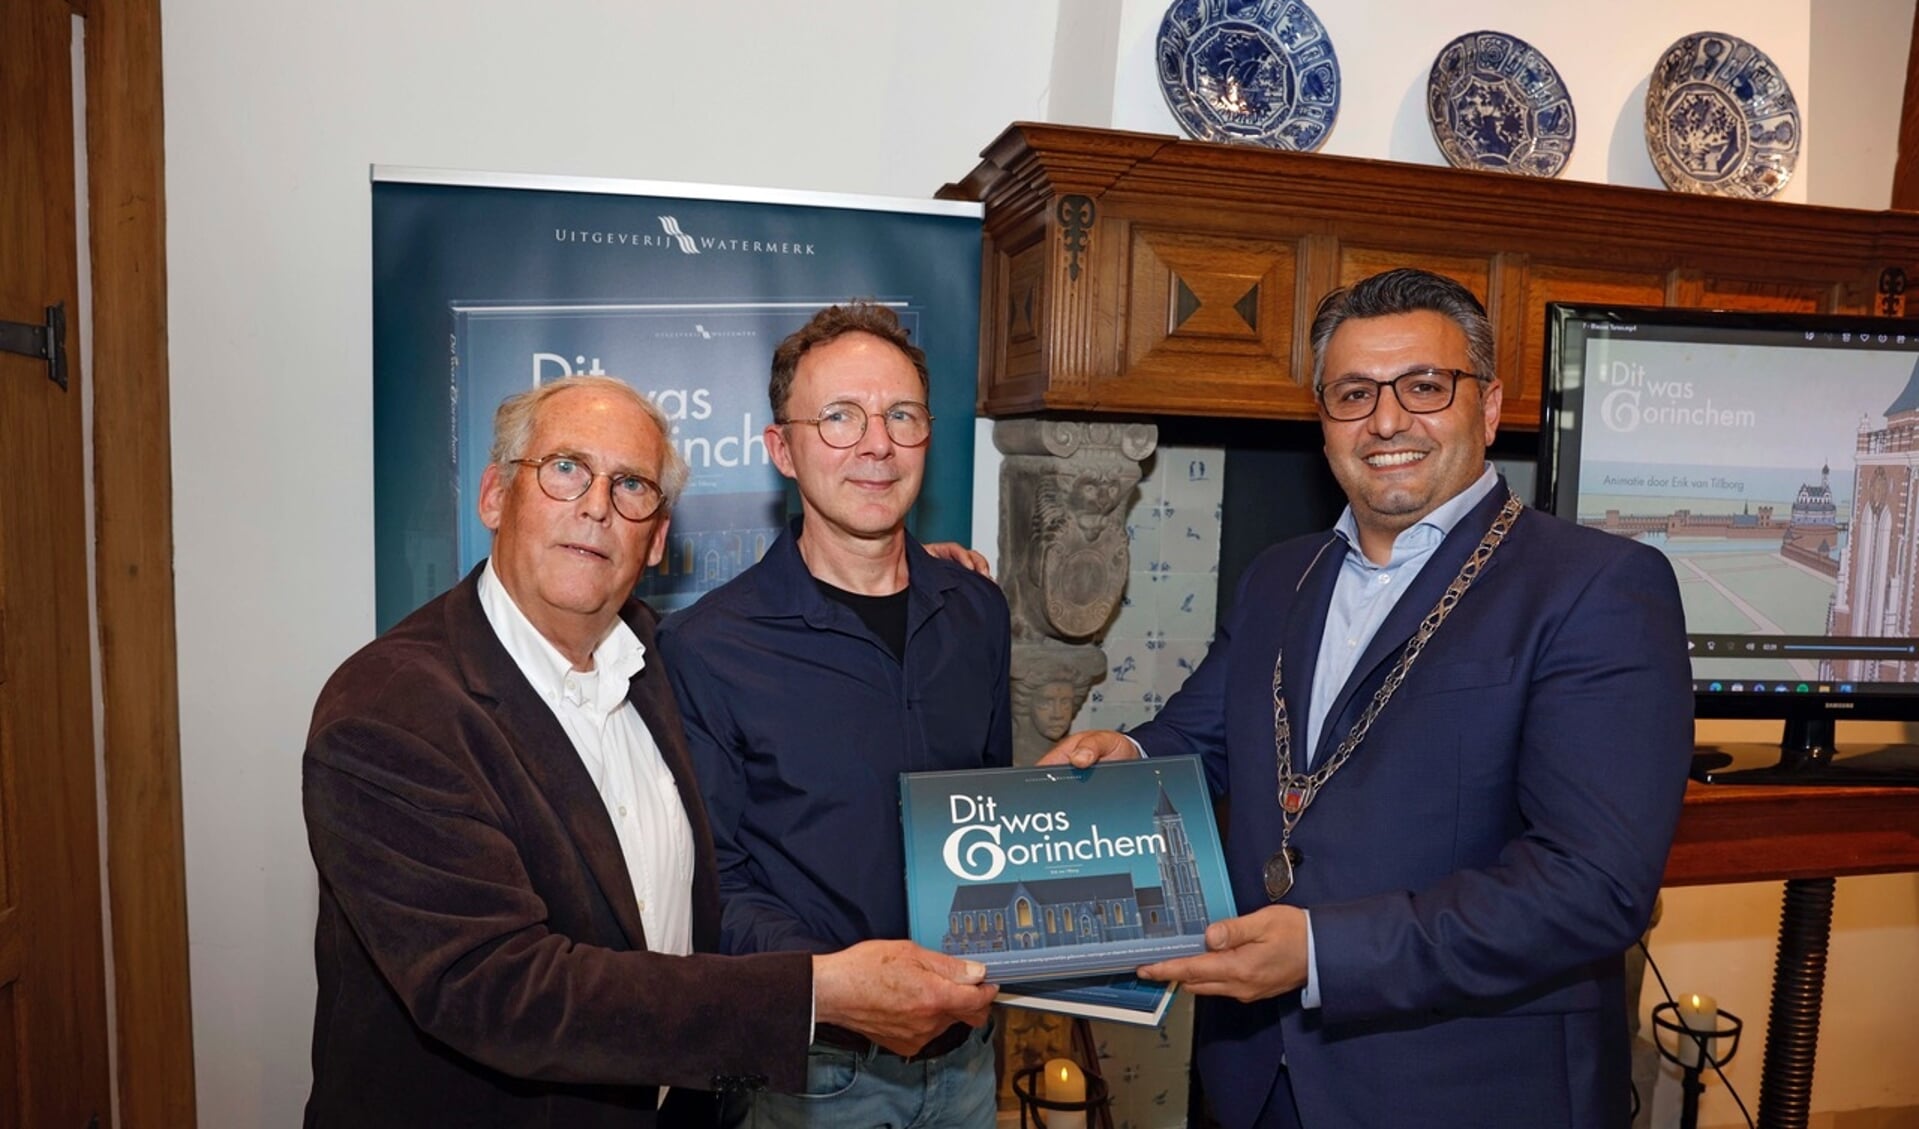 Auteur Erik van Tilborg en uitgever Peter Egge overhandigen het eerste exemplaar aan wethouder Fatih Polatli